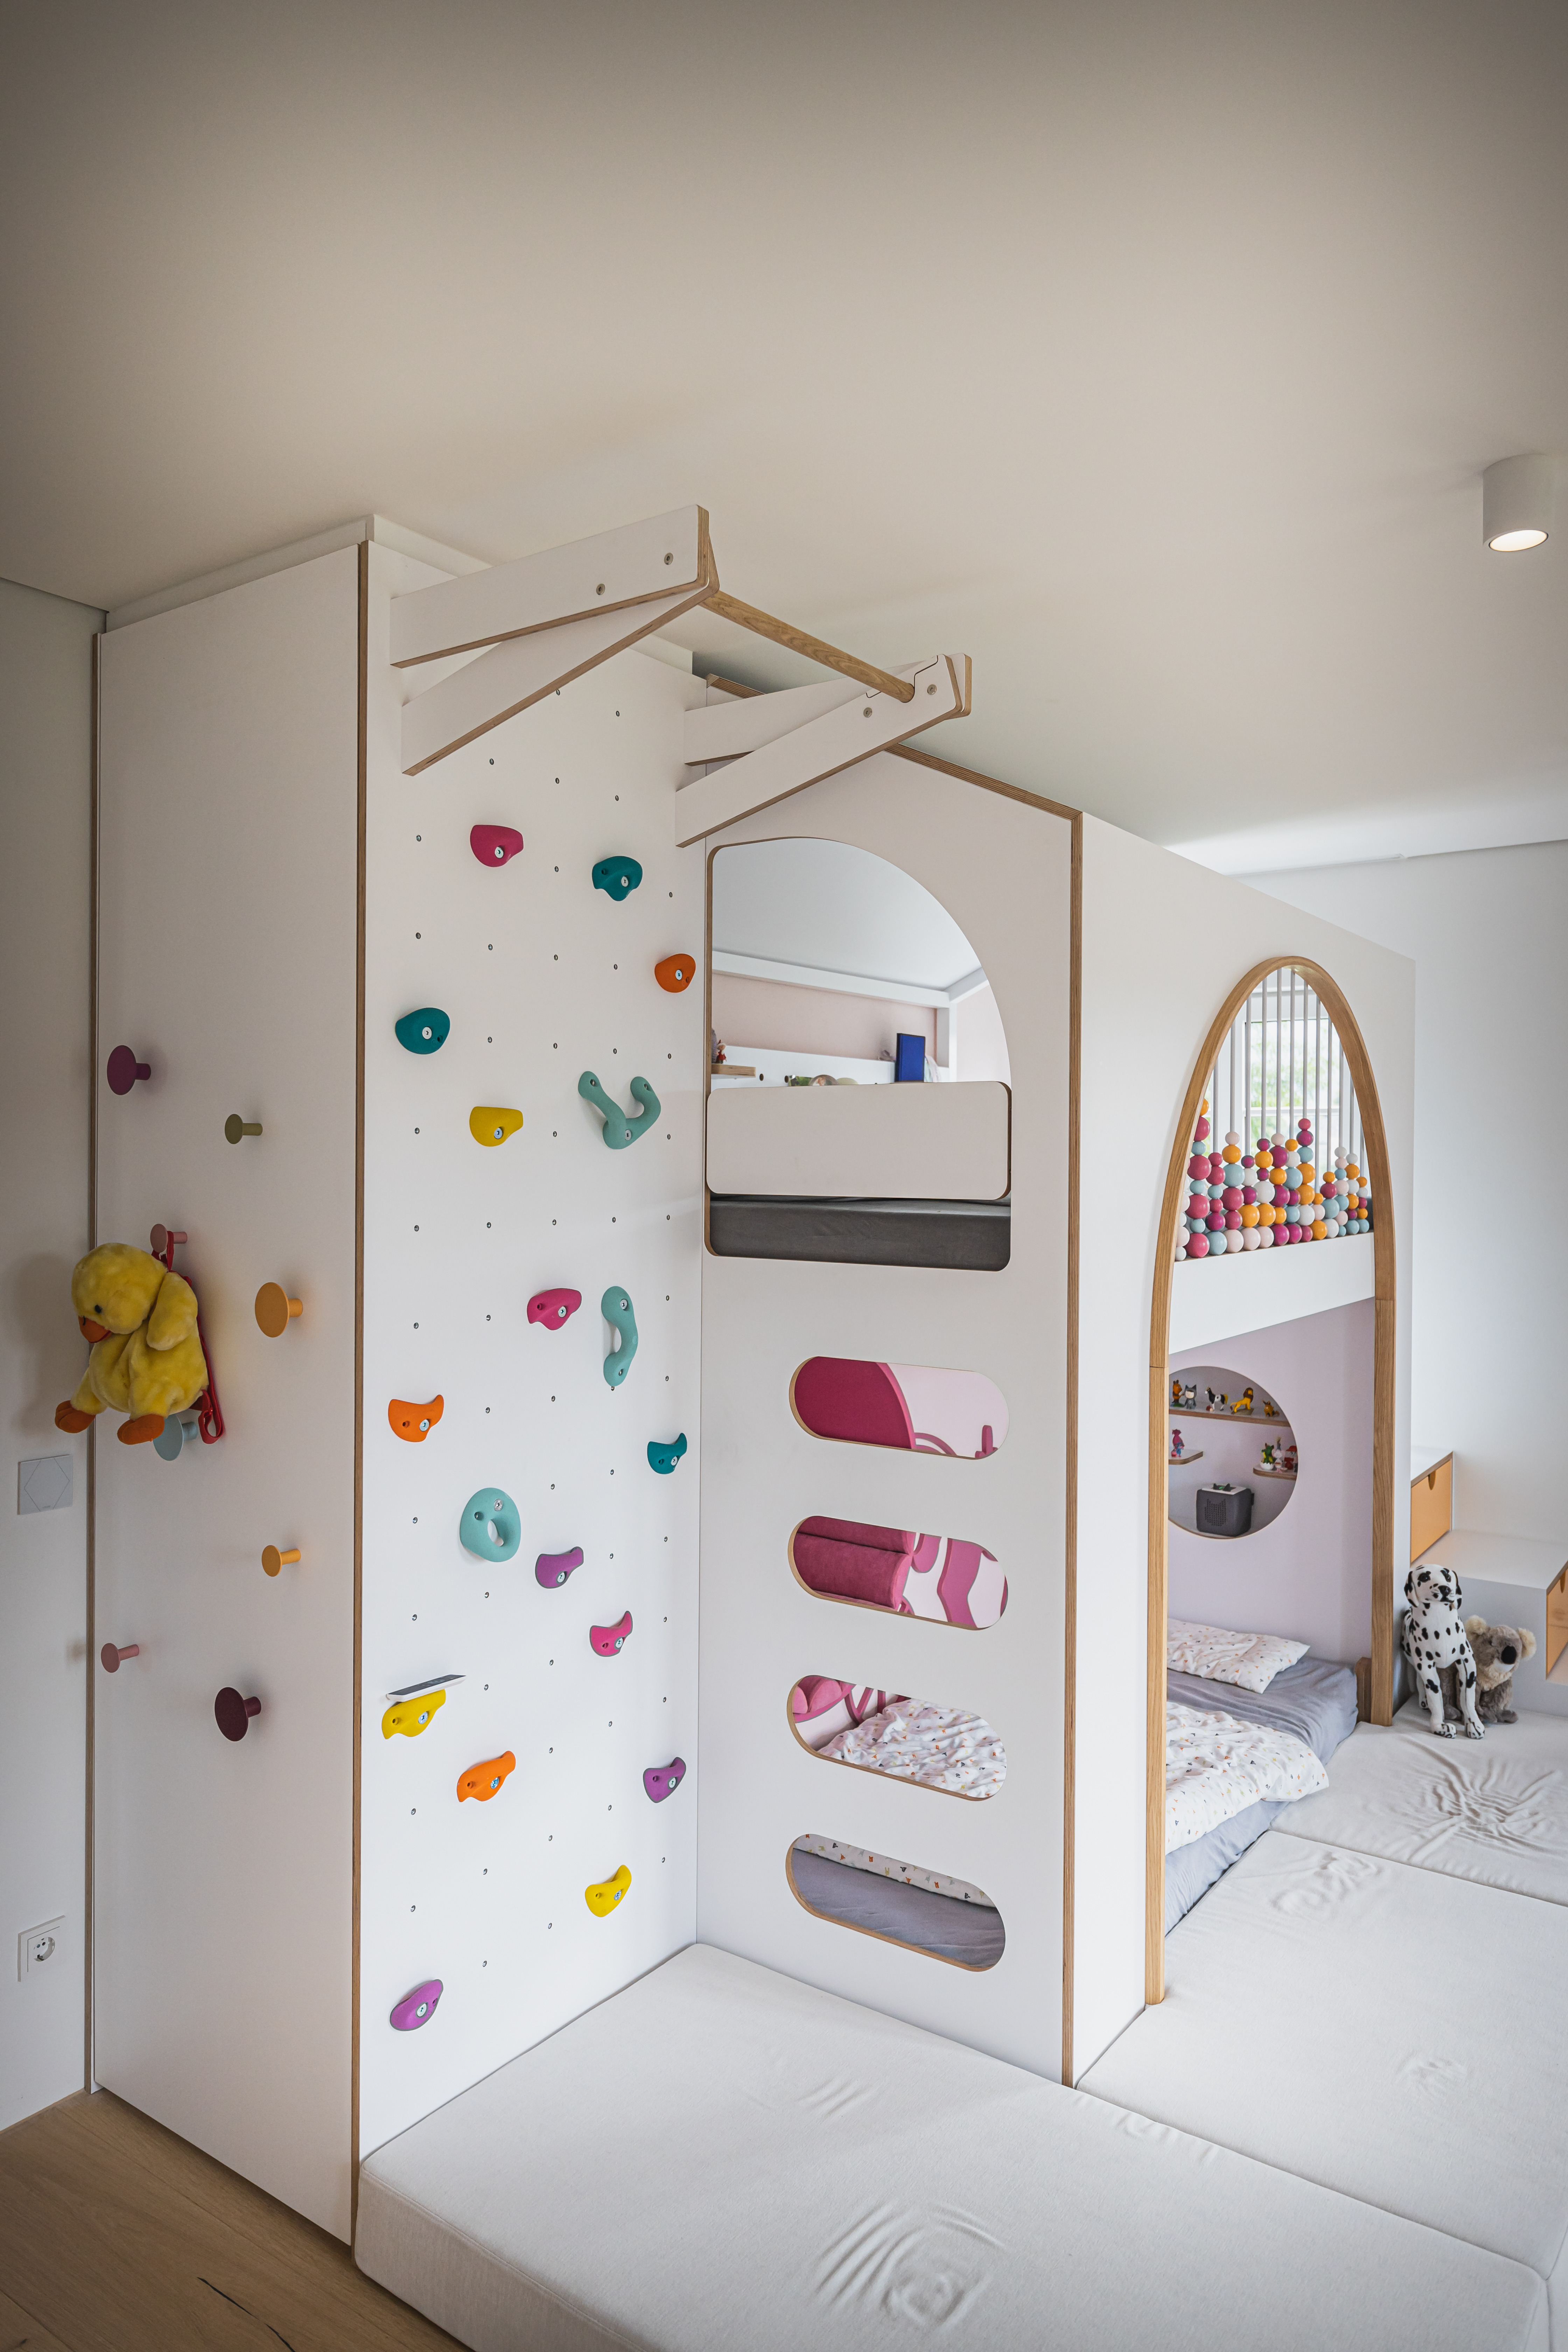 Tous les souhaits ont été réalisés : Lit inspiré d'un loft, espaces de rangement et mur d'escalade dans la chambre des enfants. 